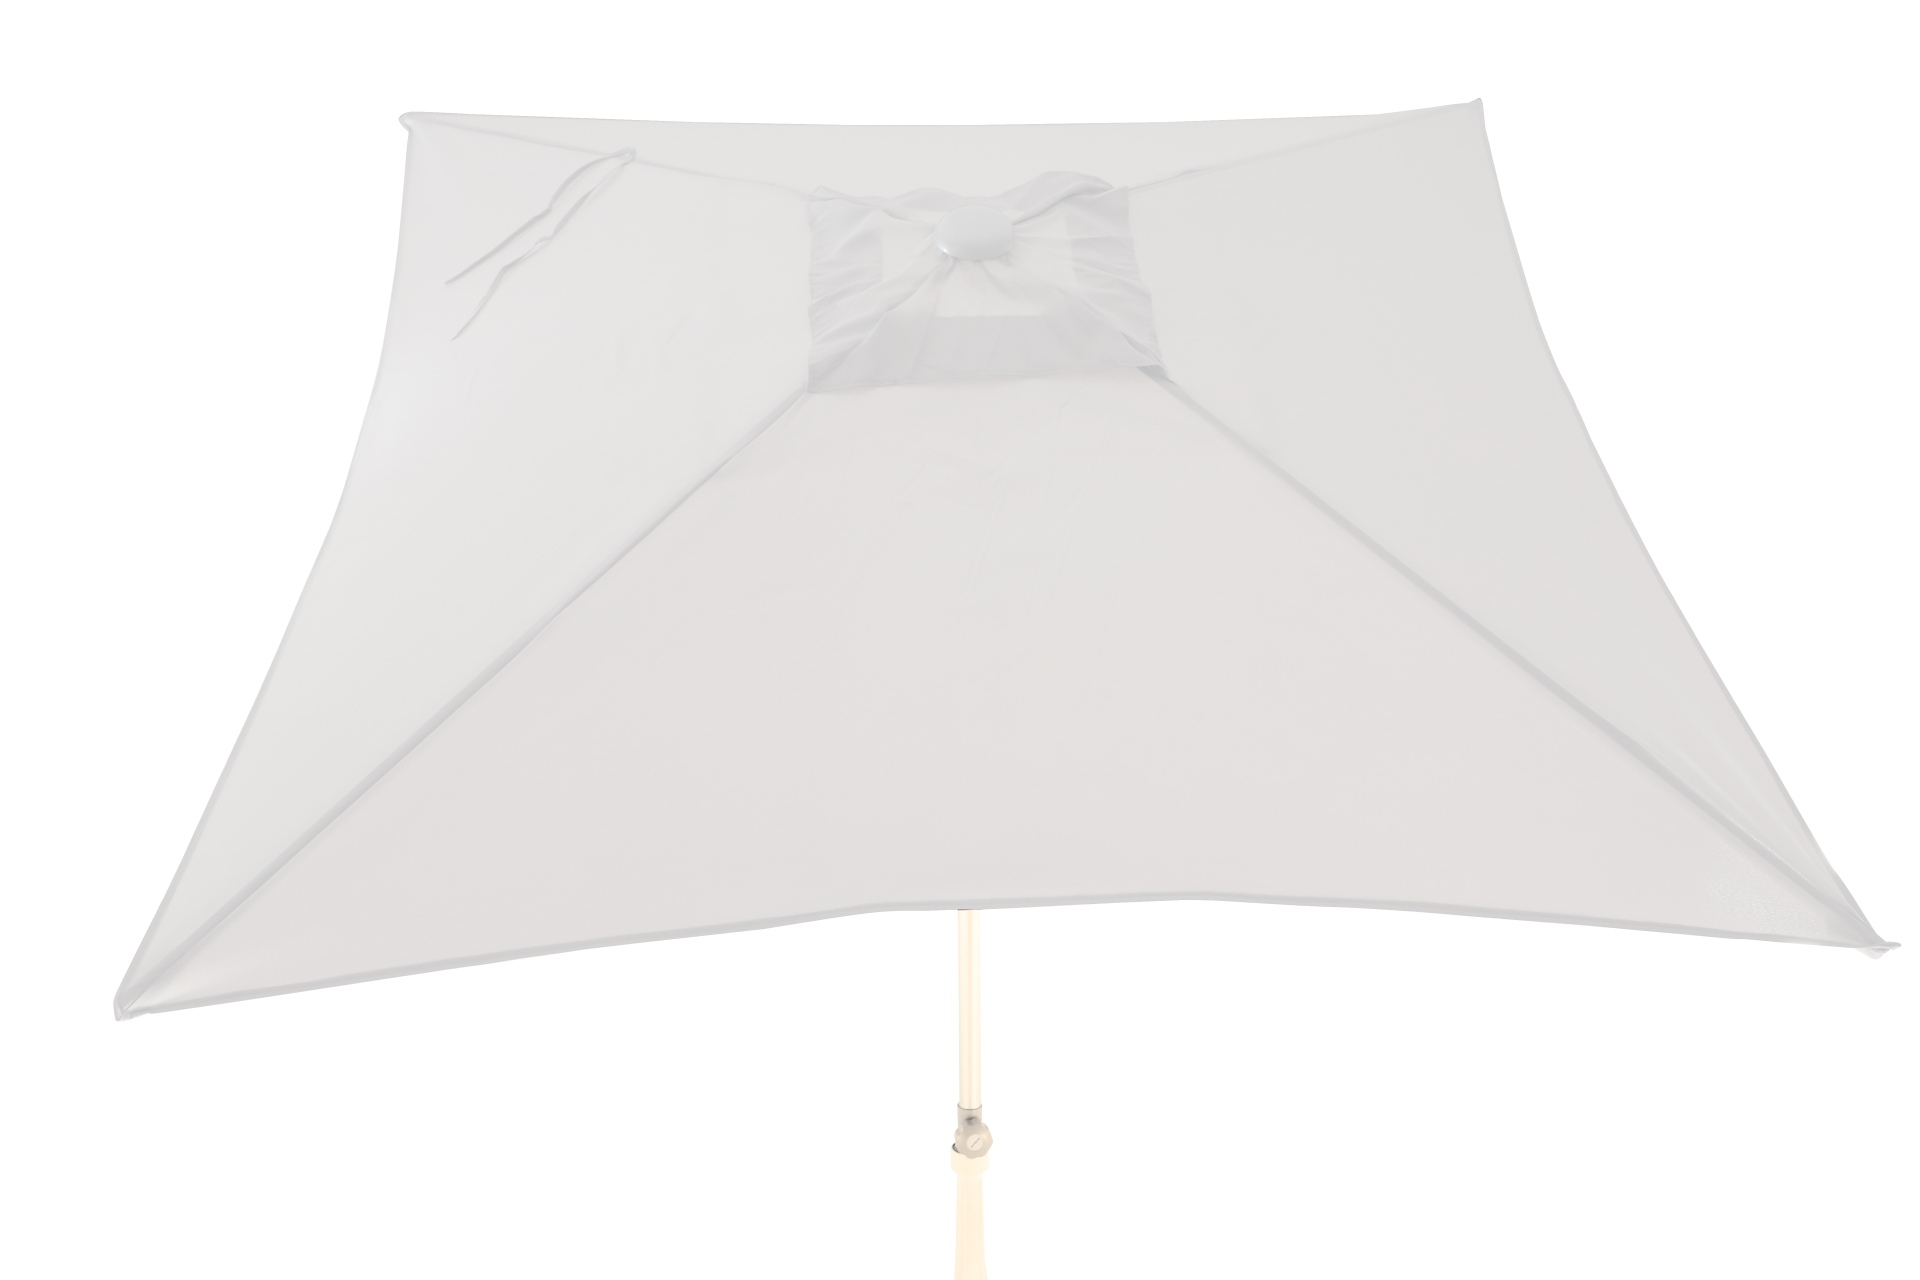 Der Sonnenschirm Elba überzeugt mit seinem modernen Design. Die Form des Schirms ist Eckig und hat eine Größe von 200 cm. Designet wurde er von der Marke Jan Kurtz und hat die Farbe Weiß.